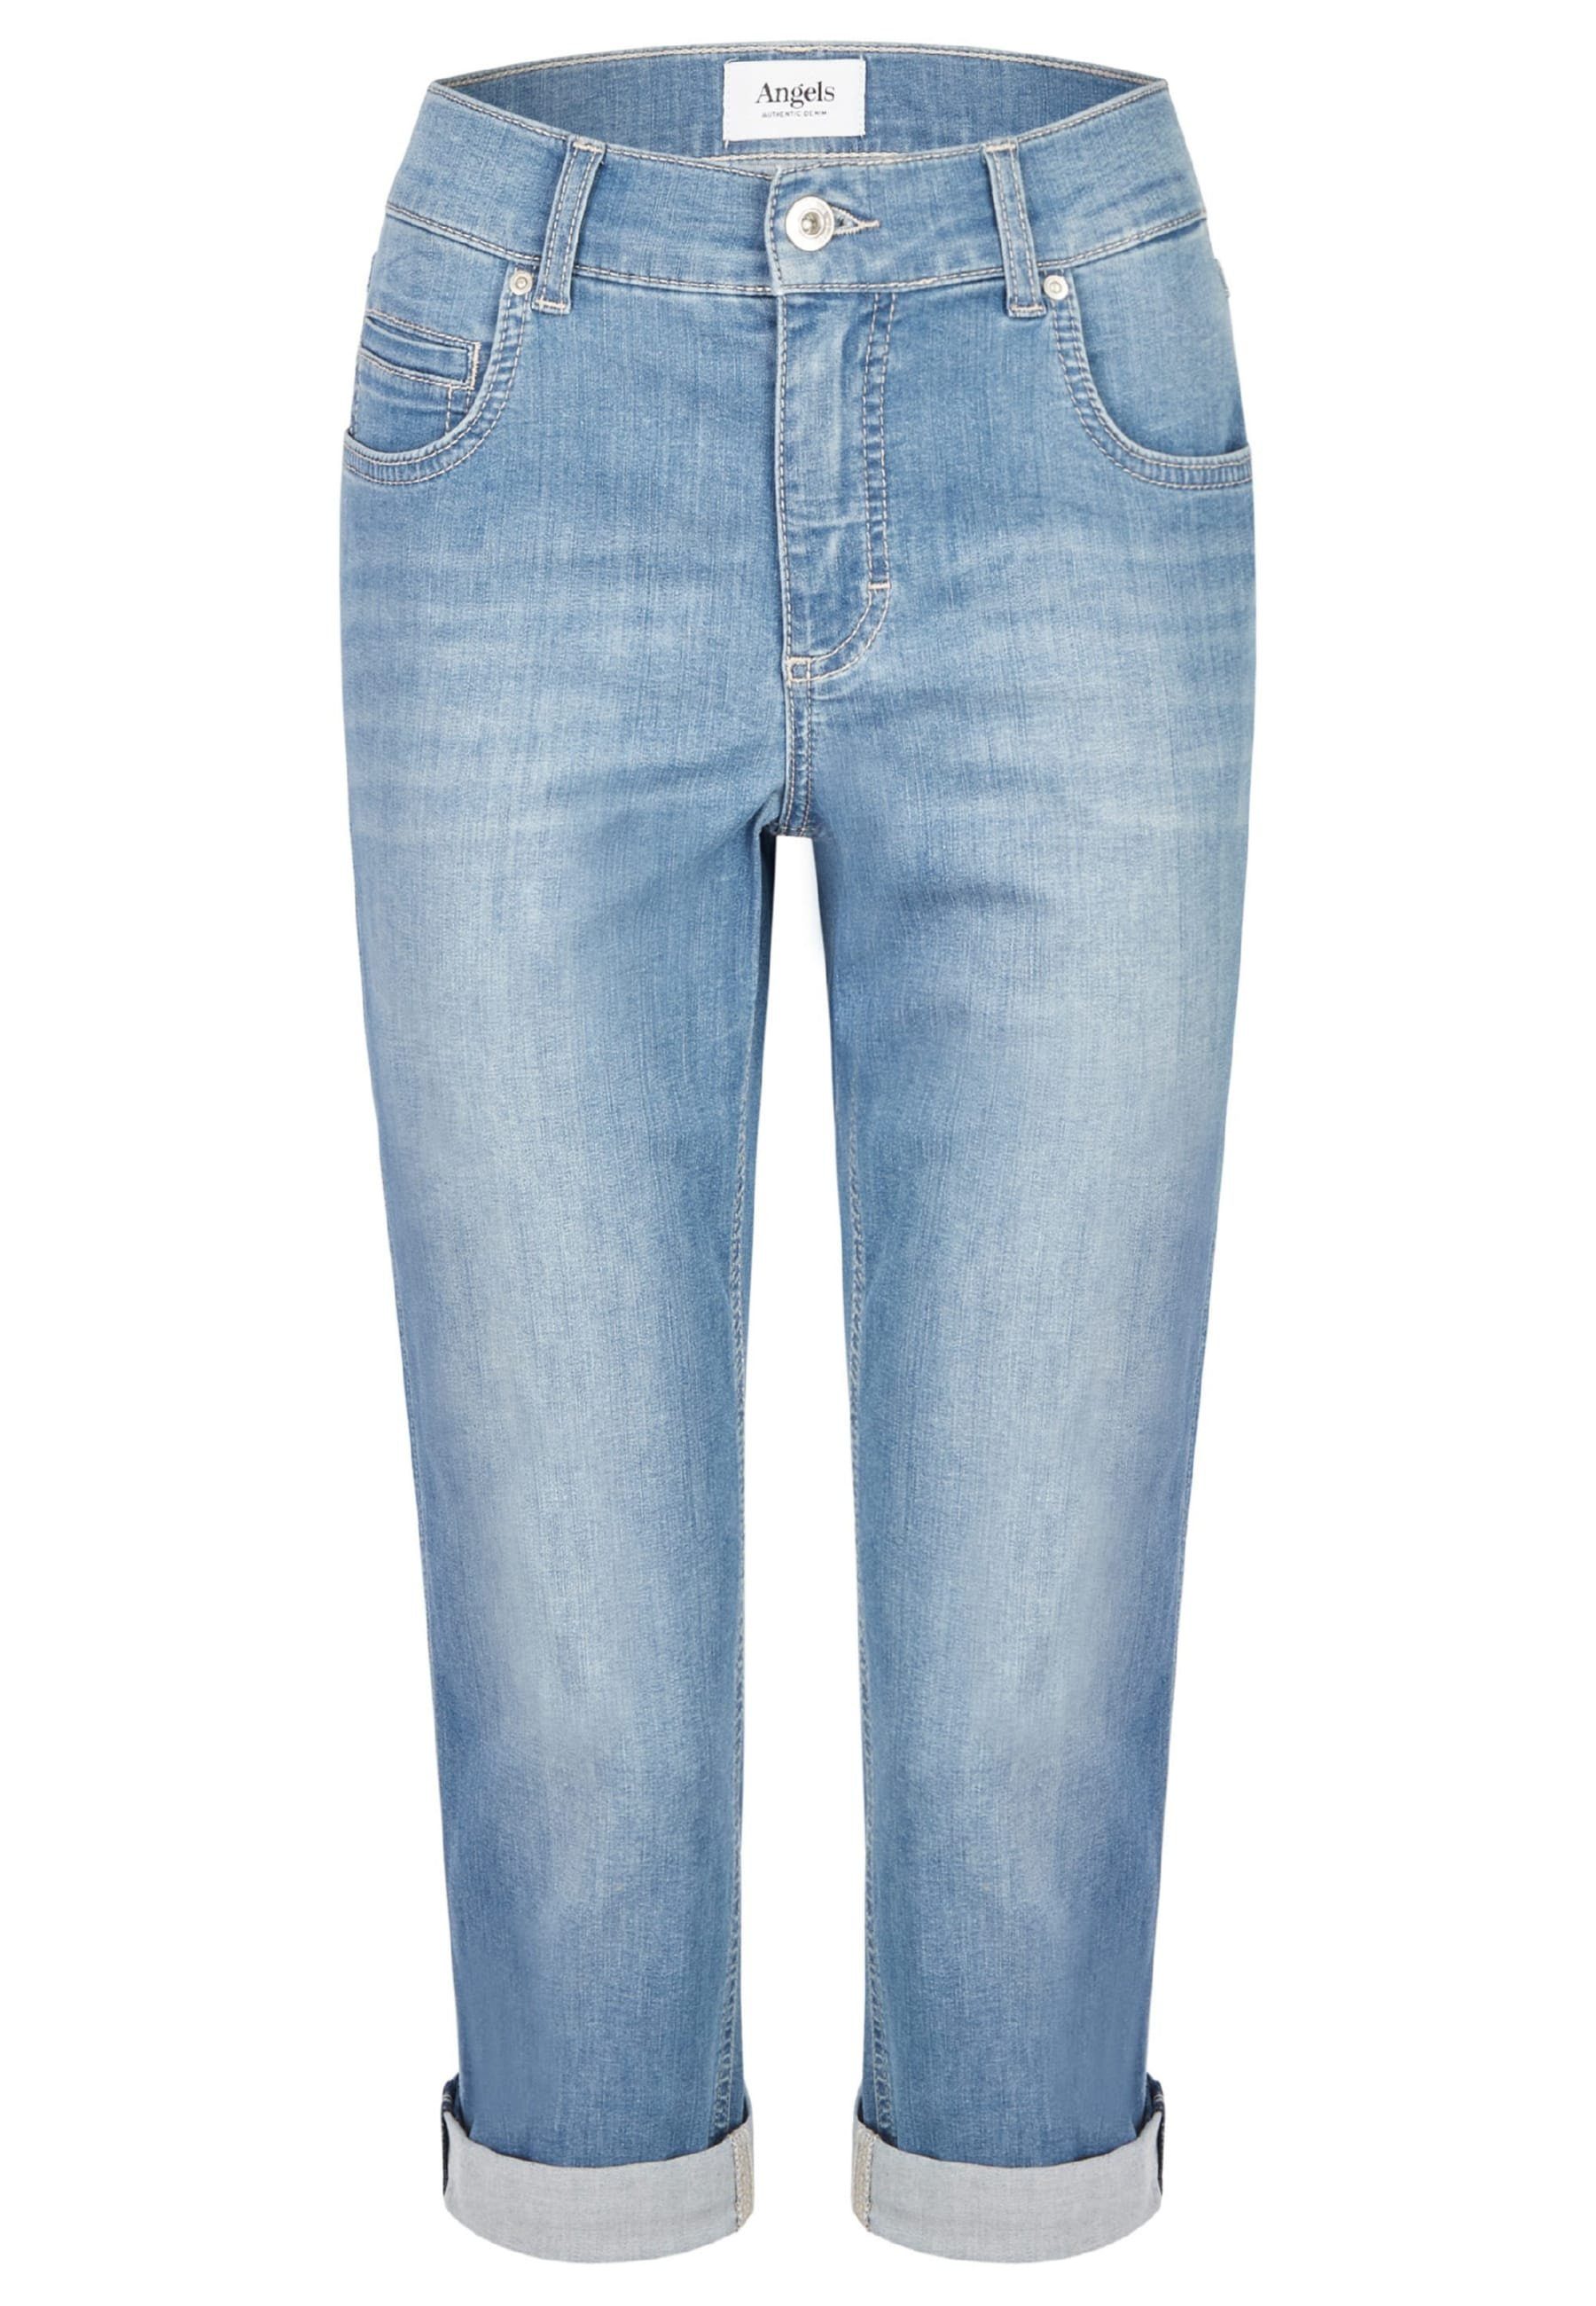 hellblau ANGELS mit Cici Jeans mit TU Beinumschlag Straight-Jeans Label-Applikationen